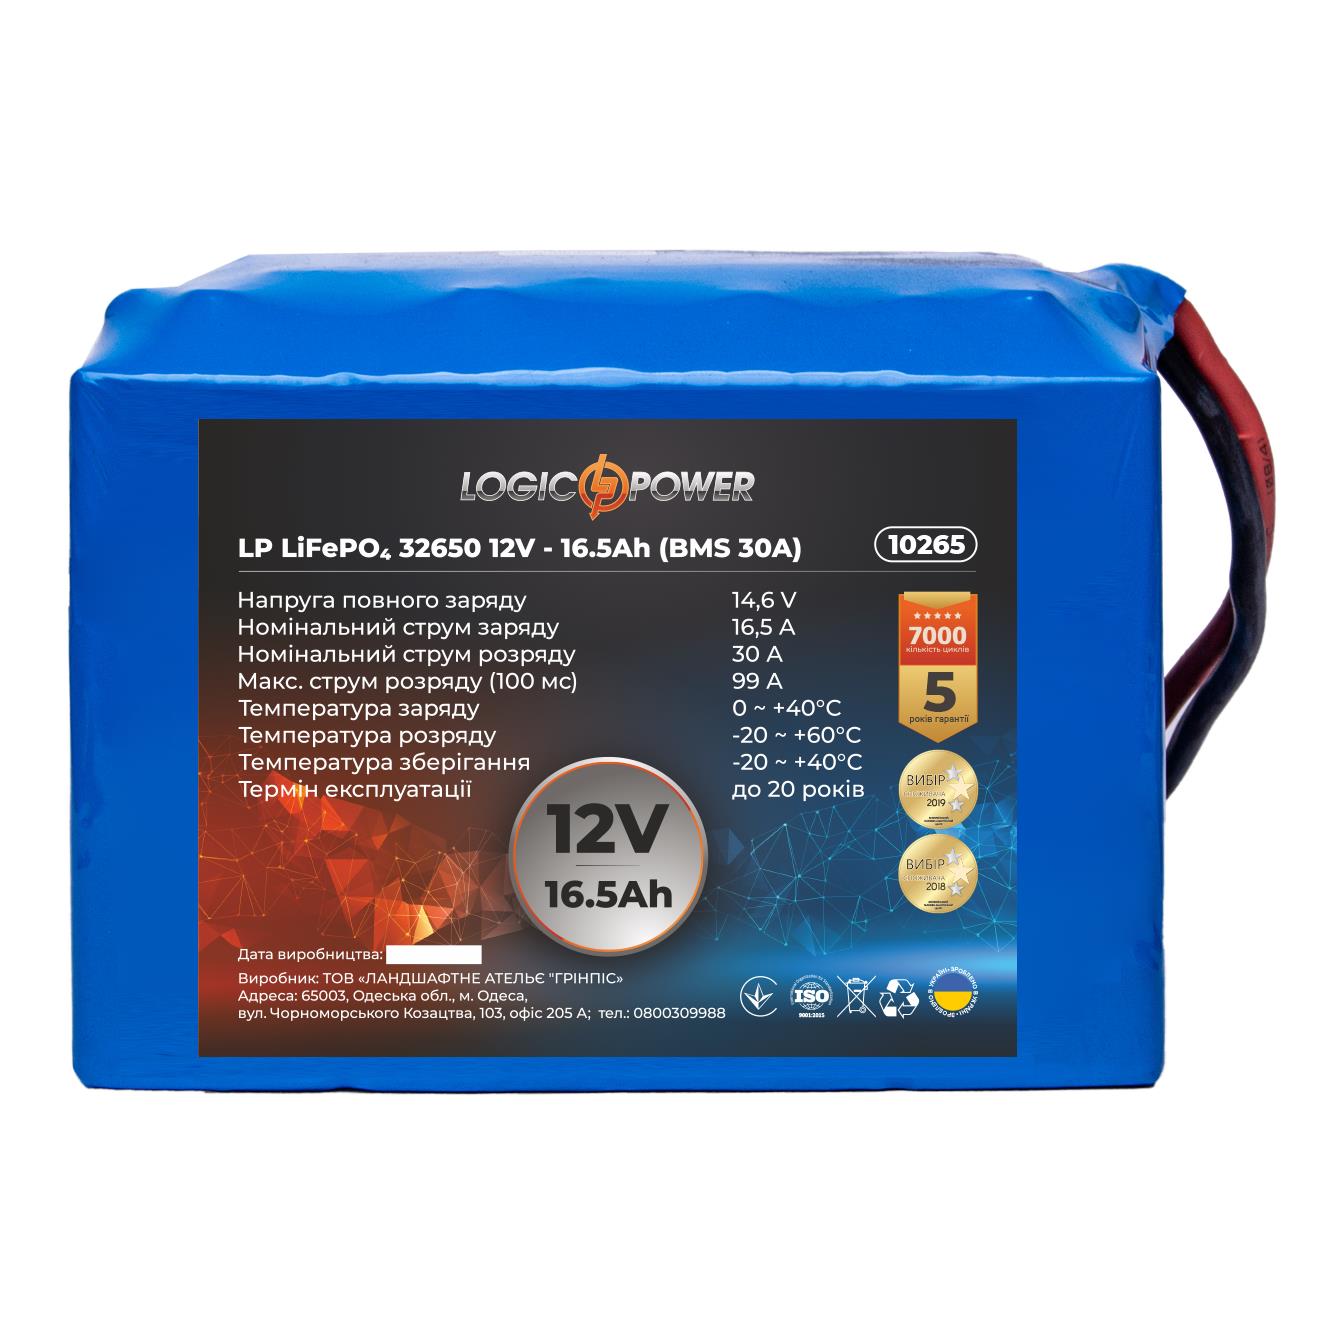 Акумулятор літій-залізо-фосфатний LogicPower LP LiFePO4 32650 12V - 16.5 Ah (BMS 30A) (10265)